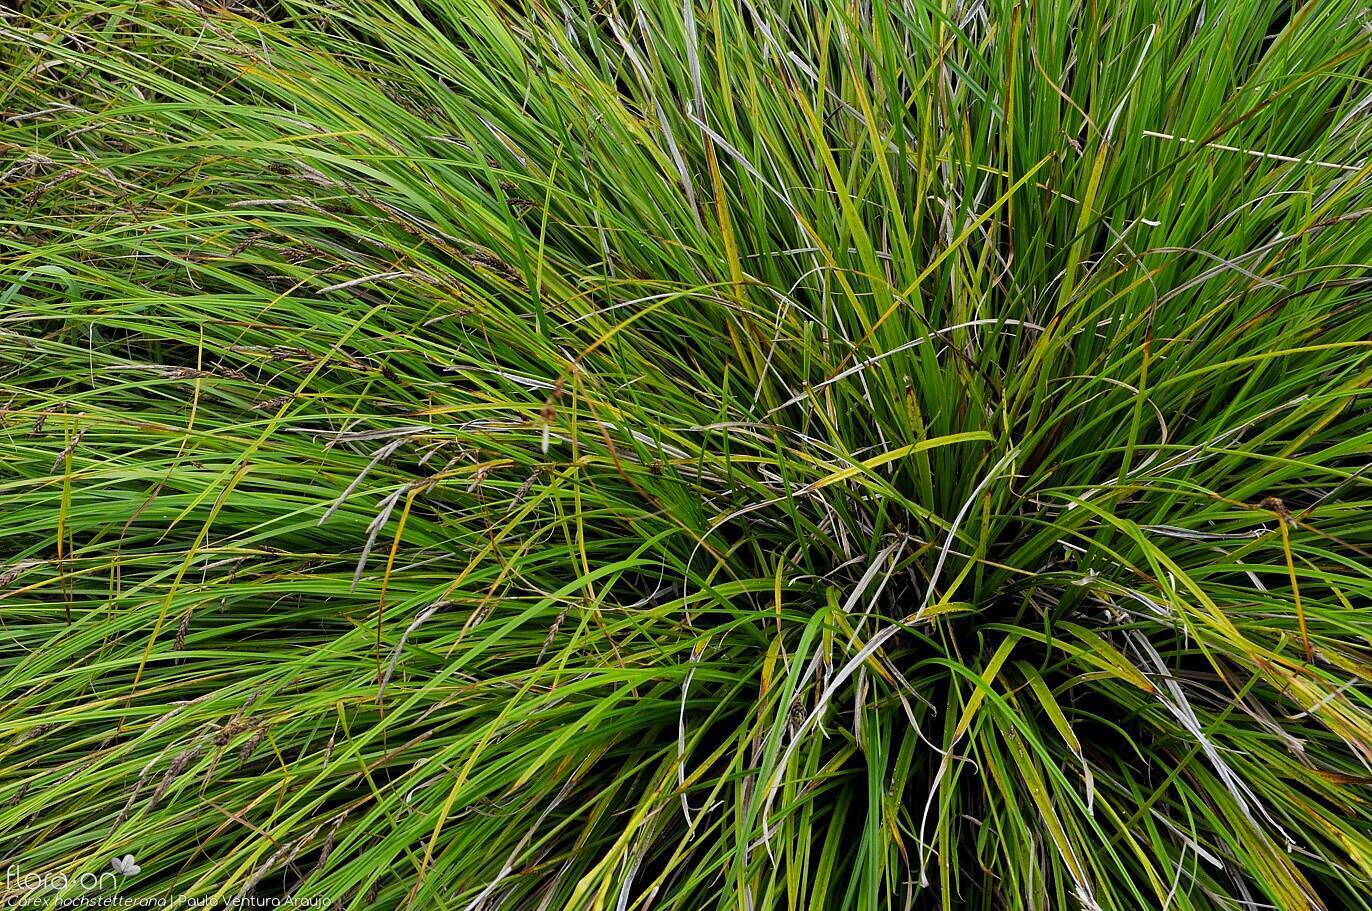 Carex hochstetteriana -  | Paulo Ventura Araújo; CC BY-NC 4.0